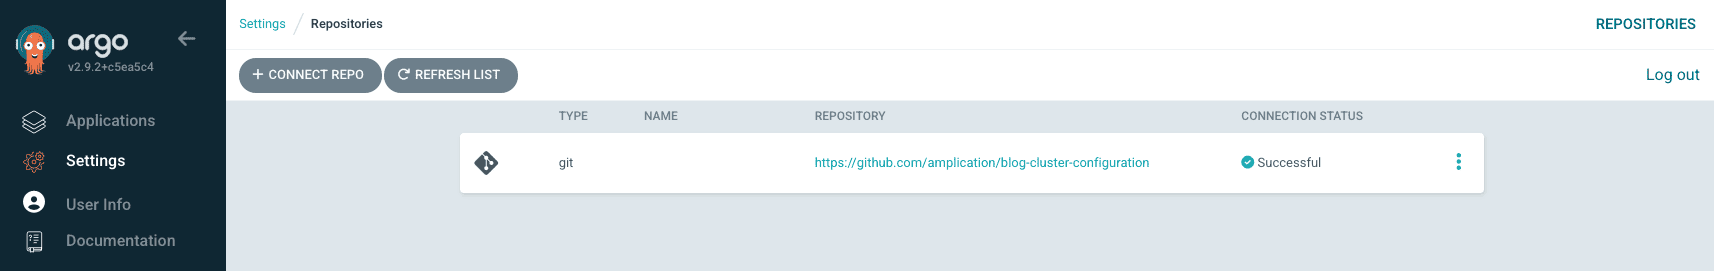 Screenshot showing Argo repository